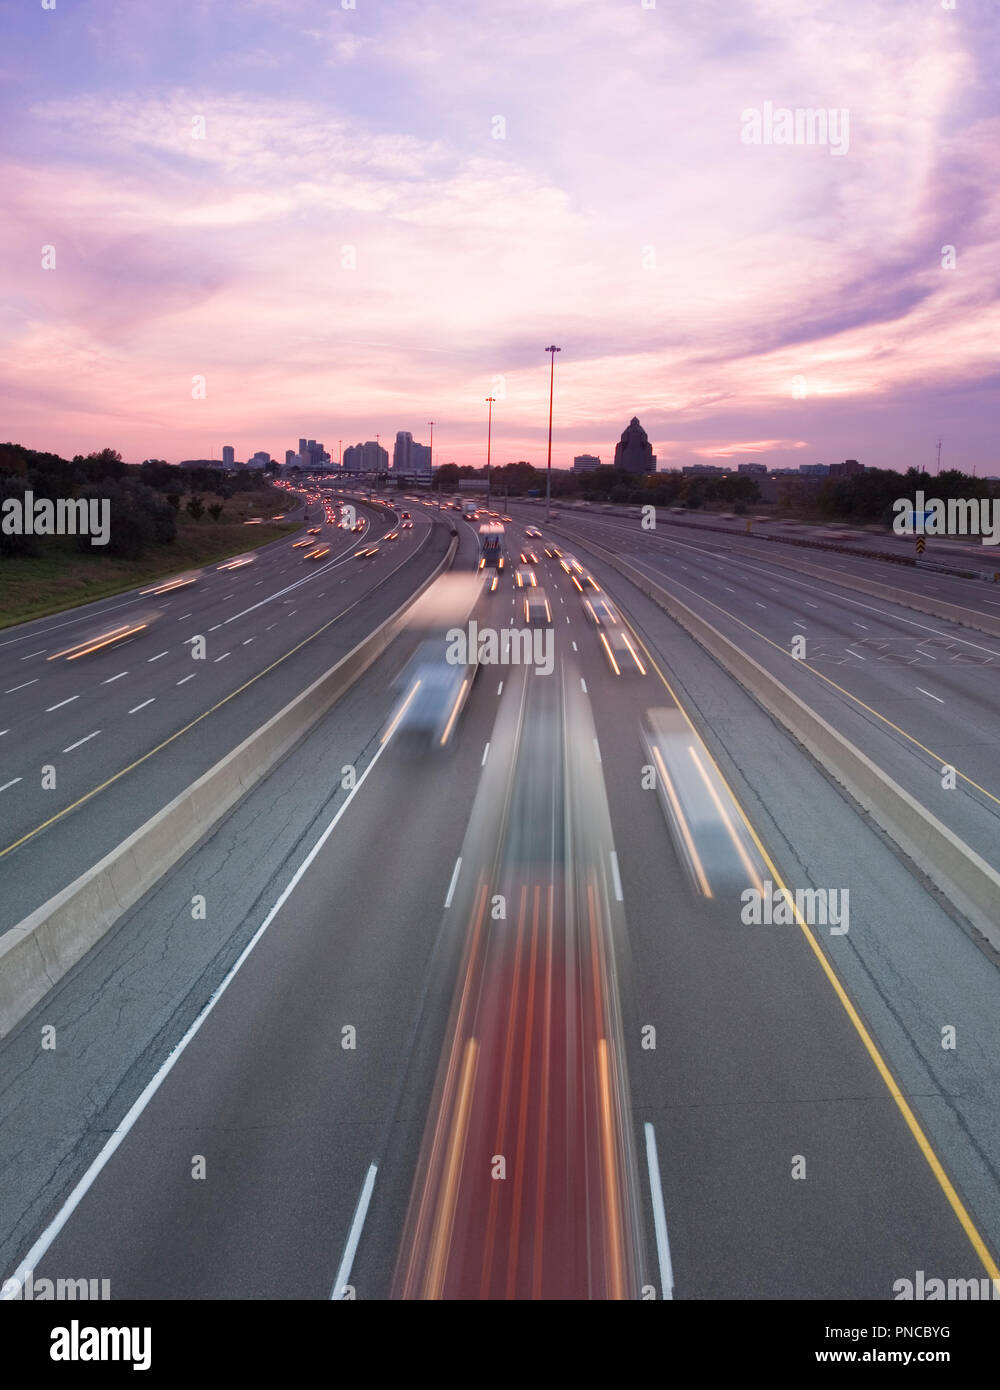 Amérique du Nord, Canada, Ontario, Toronto, la circulation sur l'autoroute au crépuscule Banque D'Images